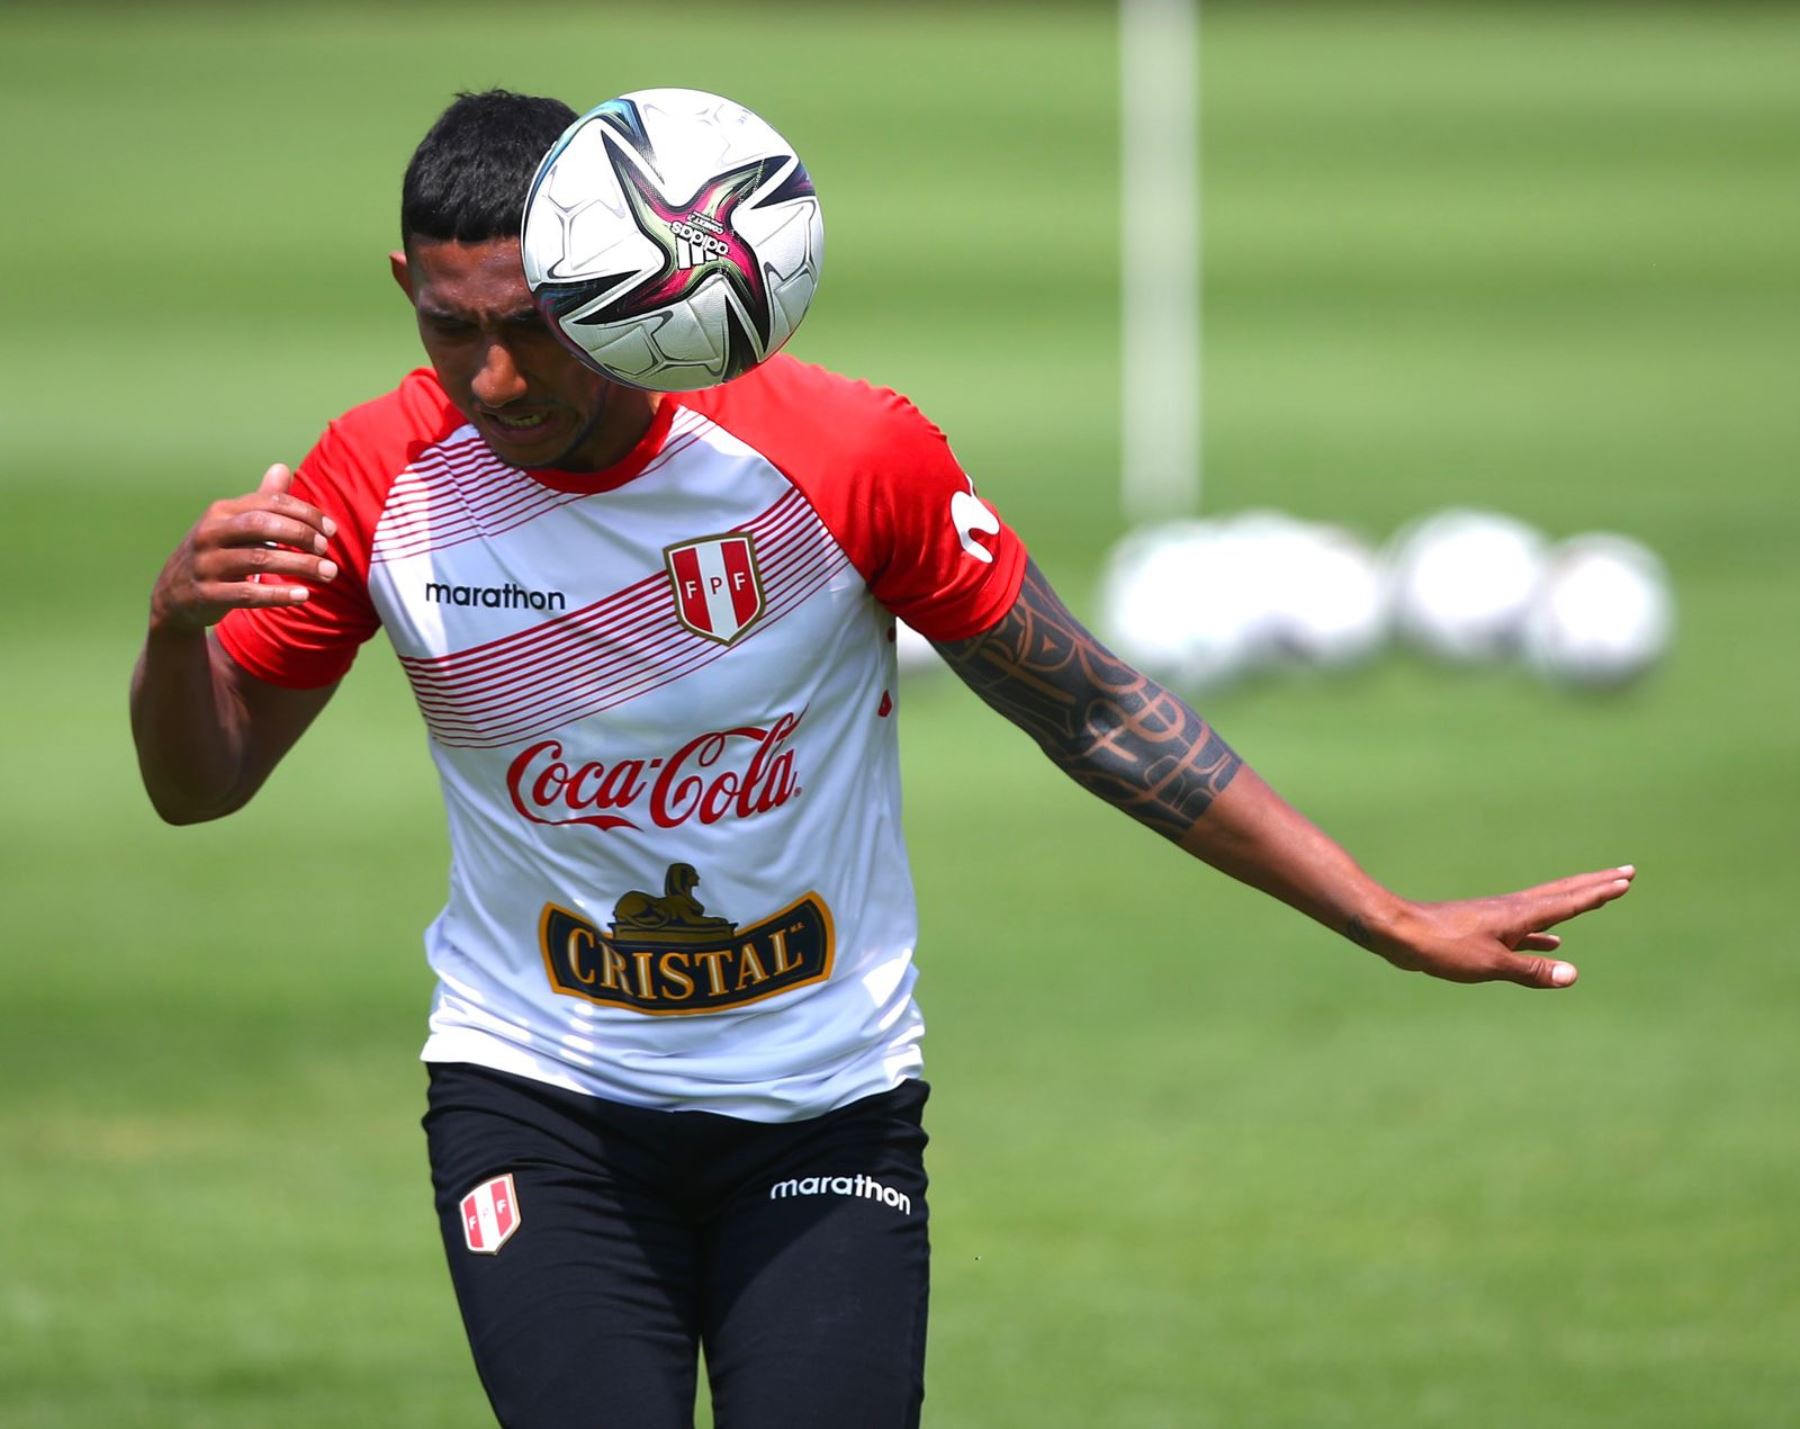 El preparador físico de la selección peruana, Néstor Bonillo, confirmó casos de covid-19 dentro de la selección peruana.